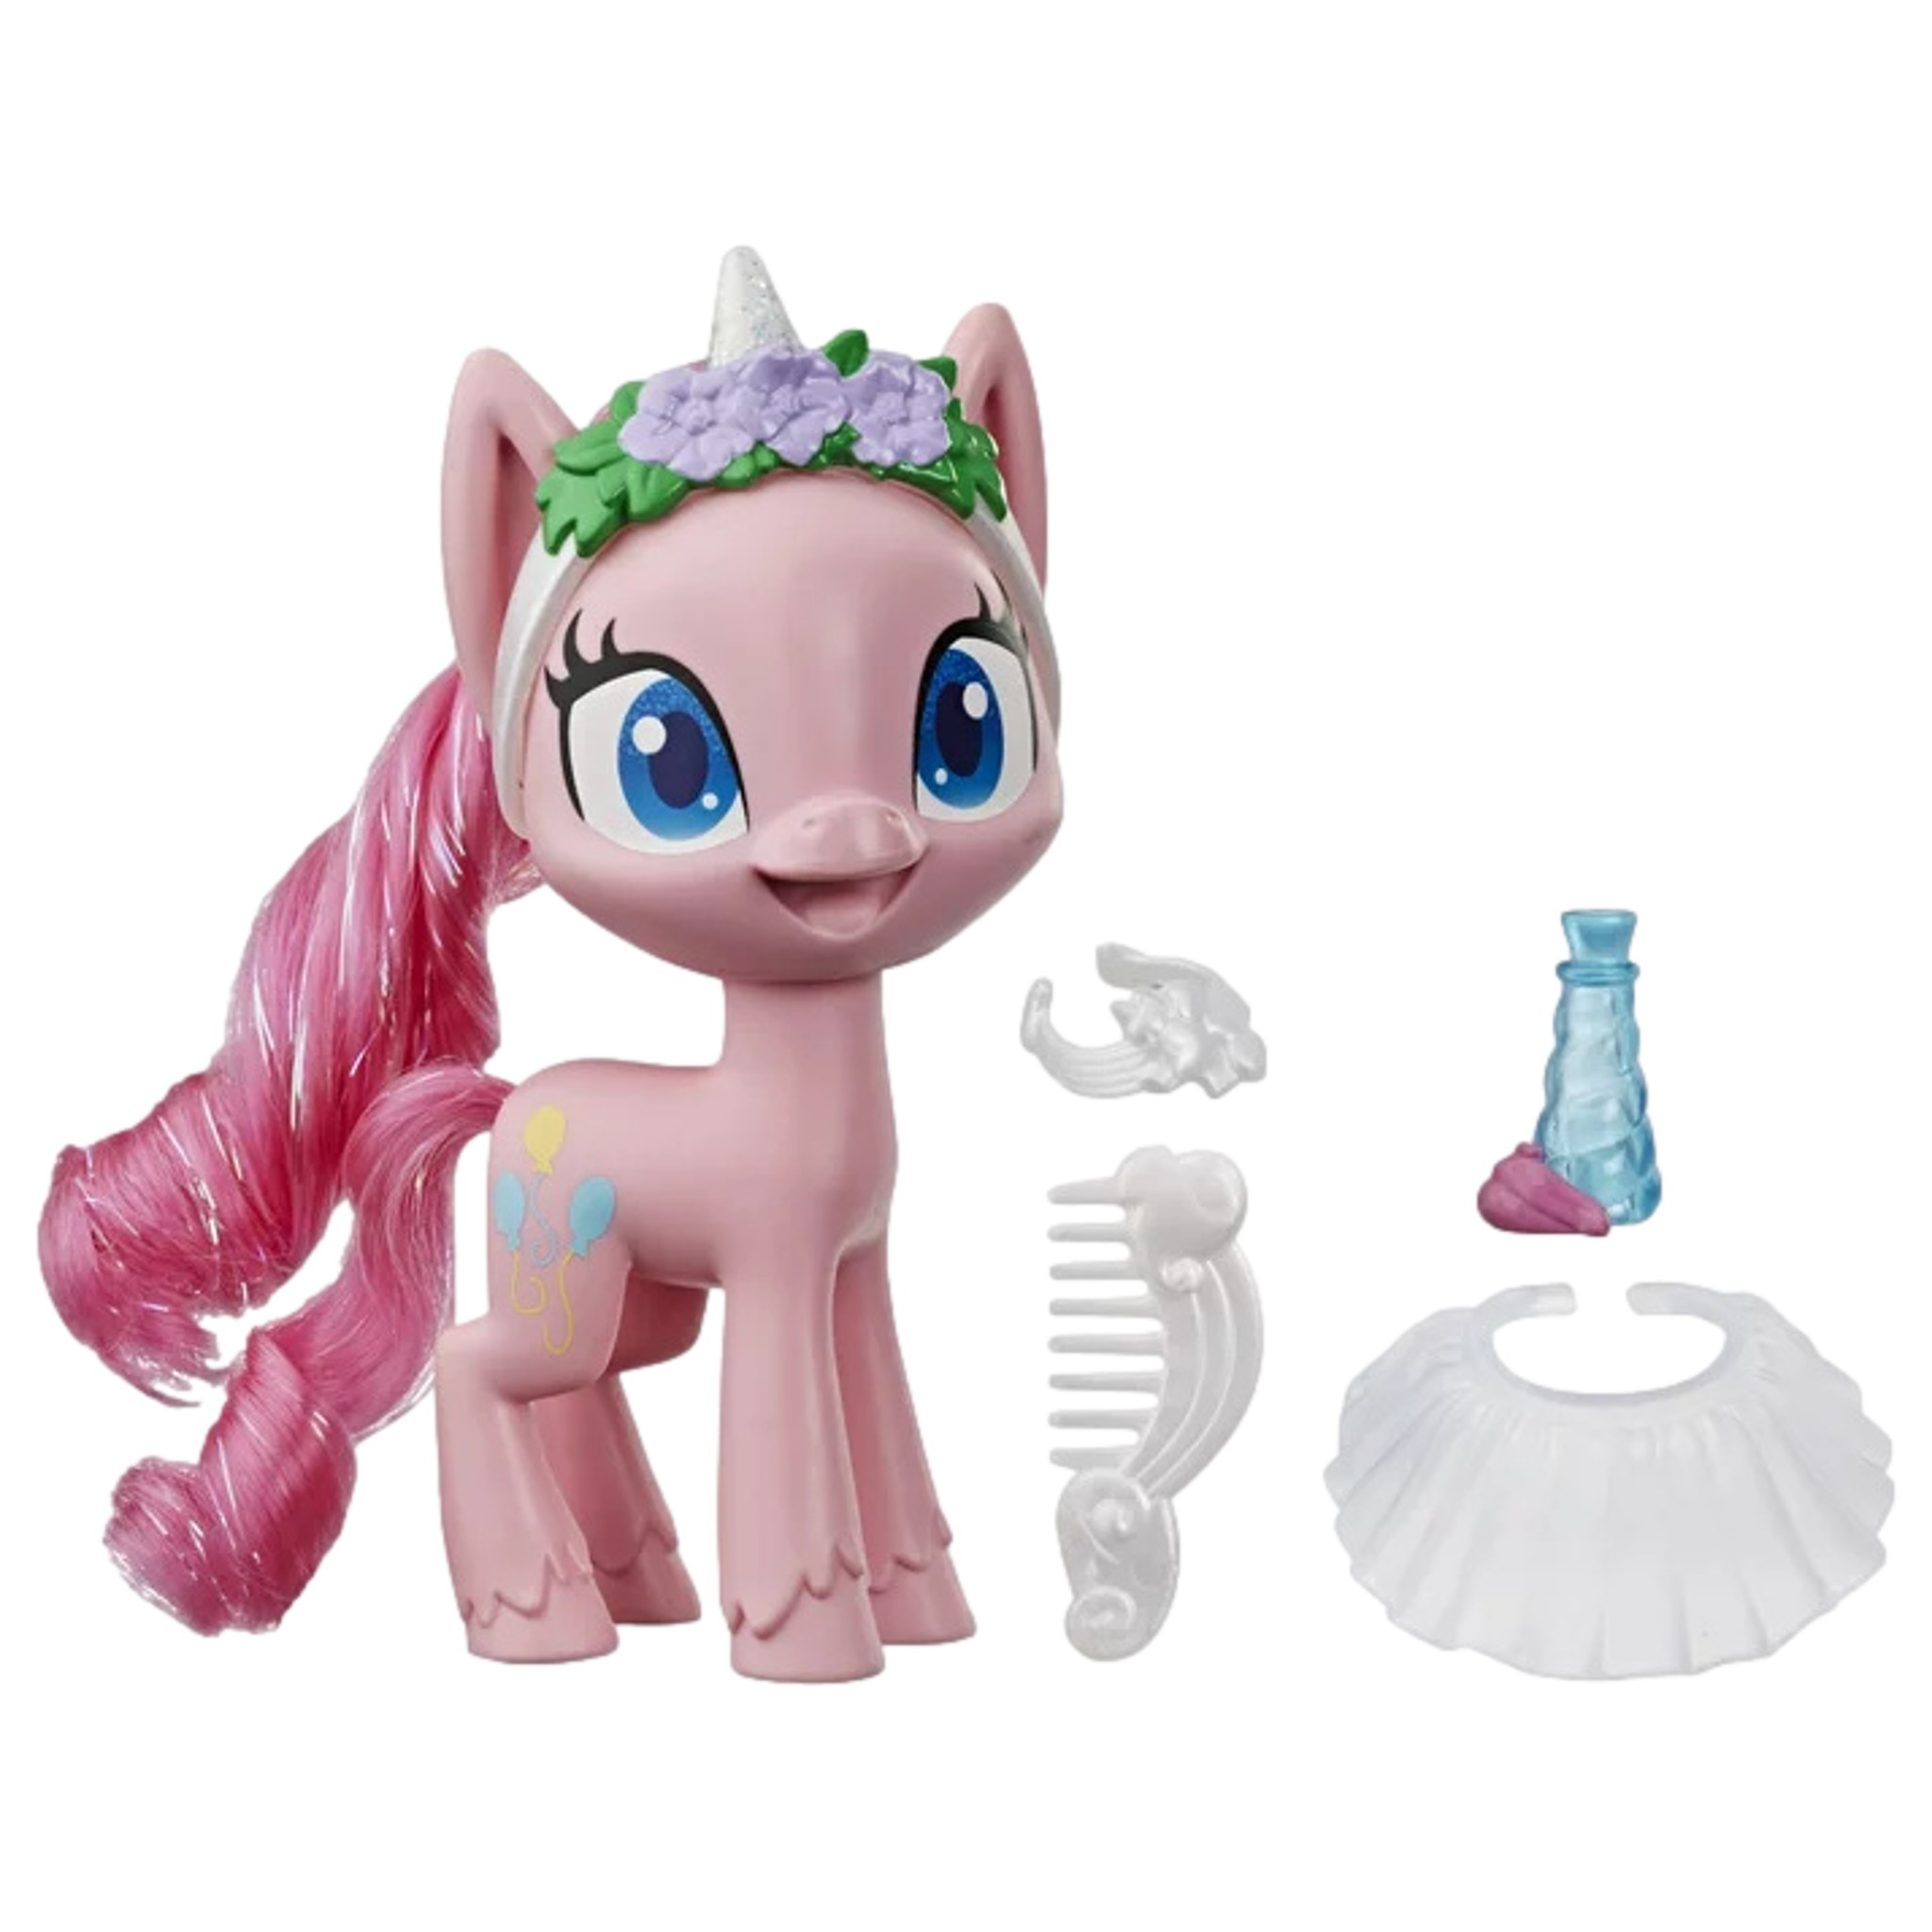 My Little Pony Pinkie Pie Potion 5-Inch Dress-Up Pony Figure Playset